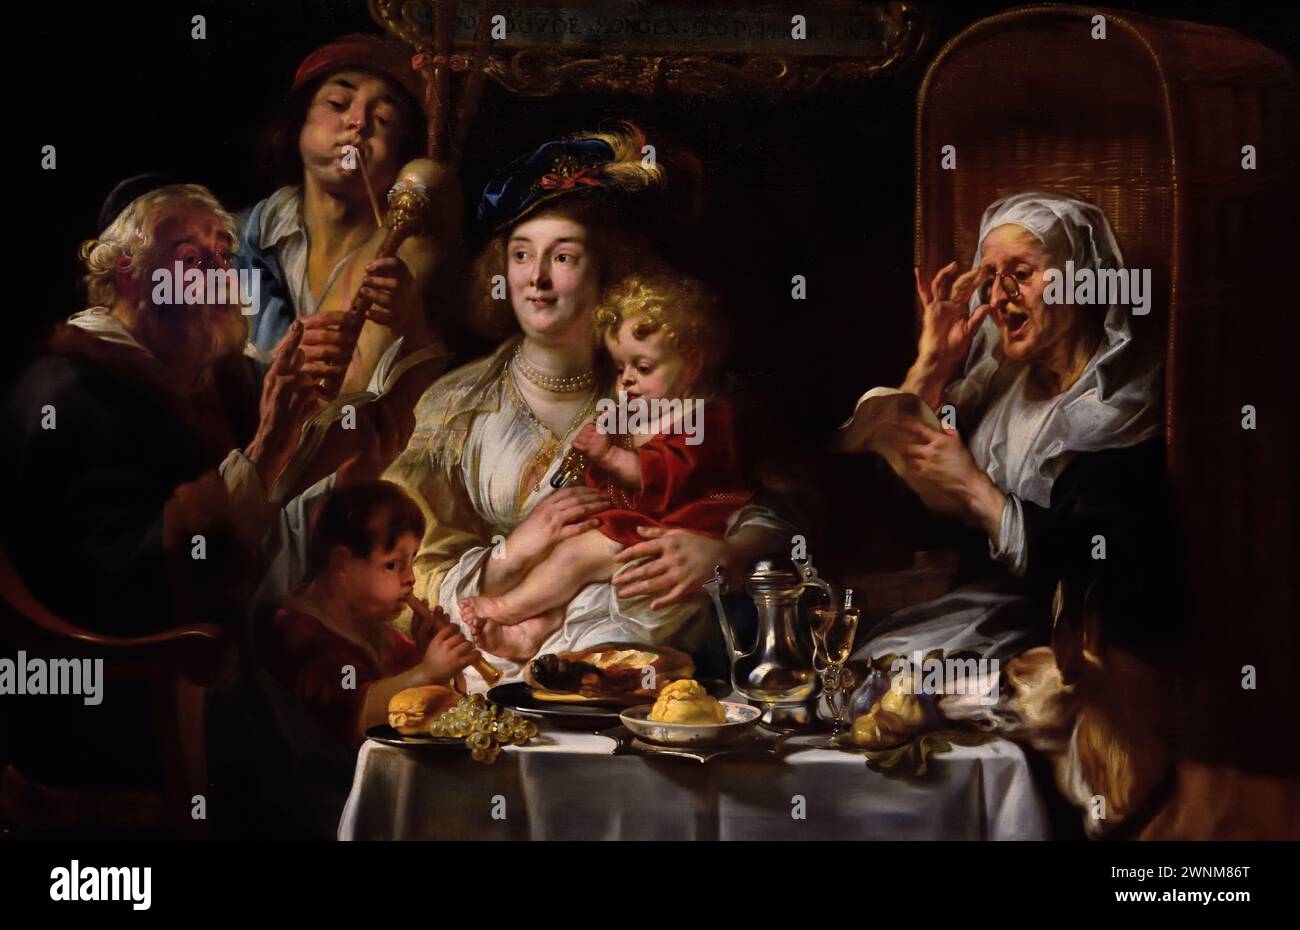 As the Old sang, SO Pipe the Young, Jacob Jordaens, (1593-1678) peintre baroque flamand du XVIIe siècle Belgique, Musée royal des Beaux-Arts, Anvers, Belgique, Belgique Banque D'Images